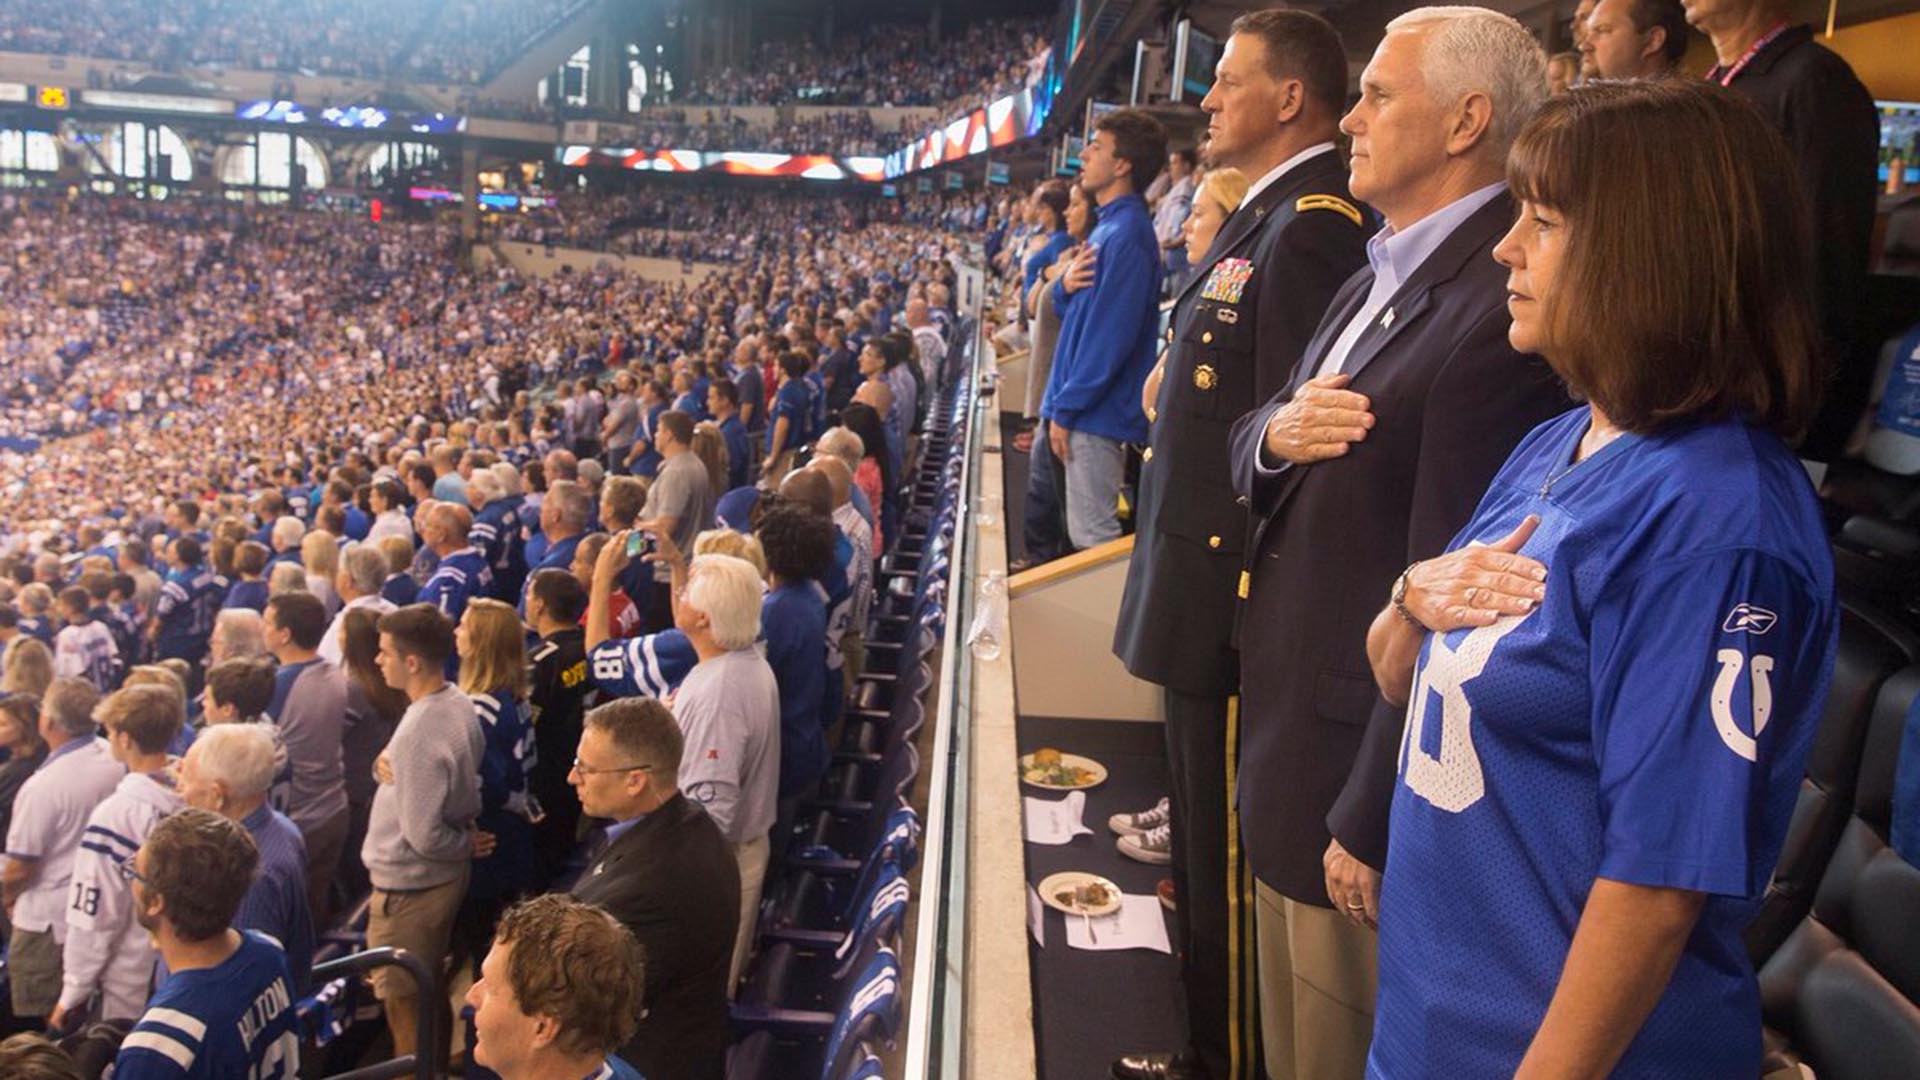 El vicepresidente Pence abandona un partido de la NFL tras las protestas de los jugadores